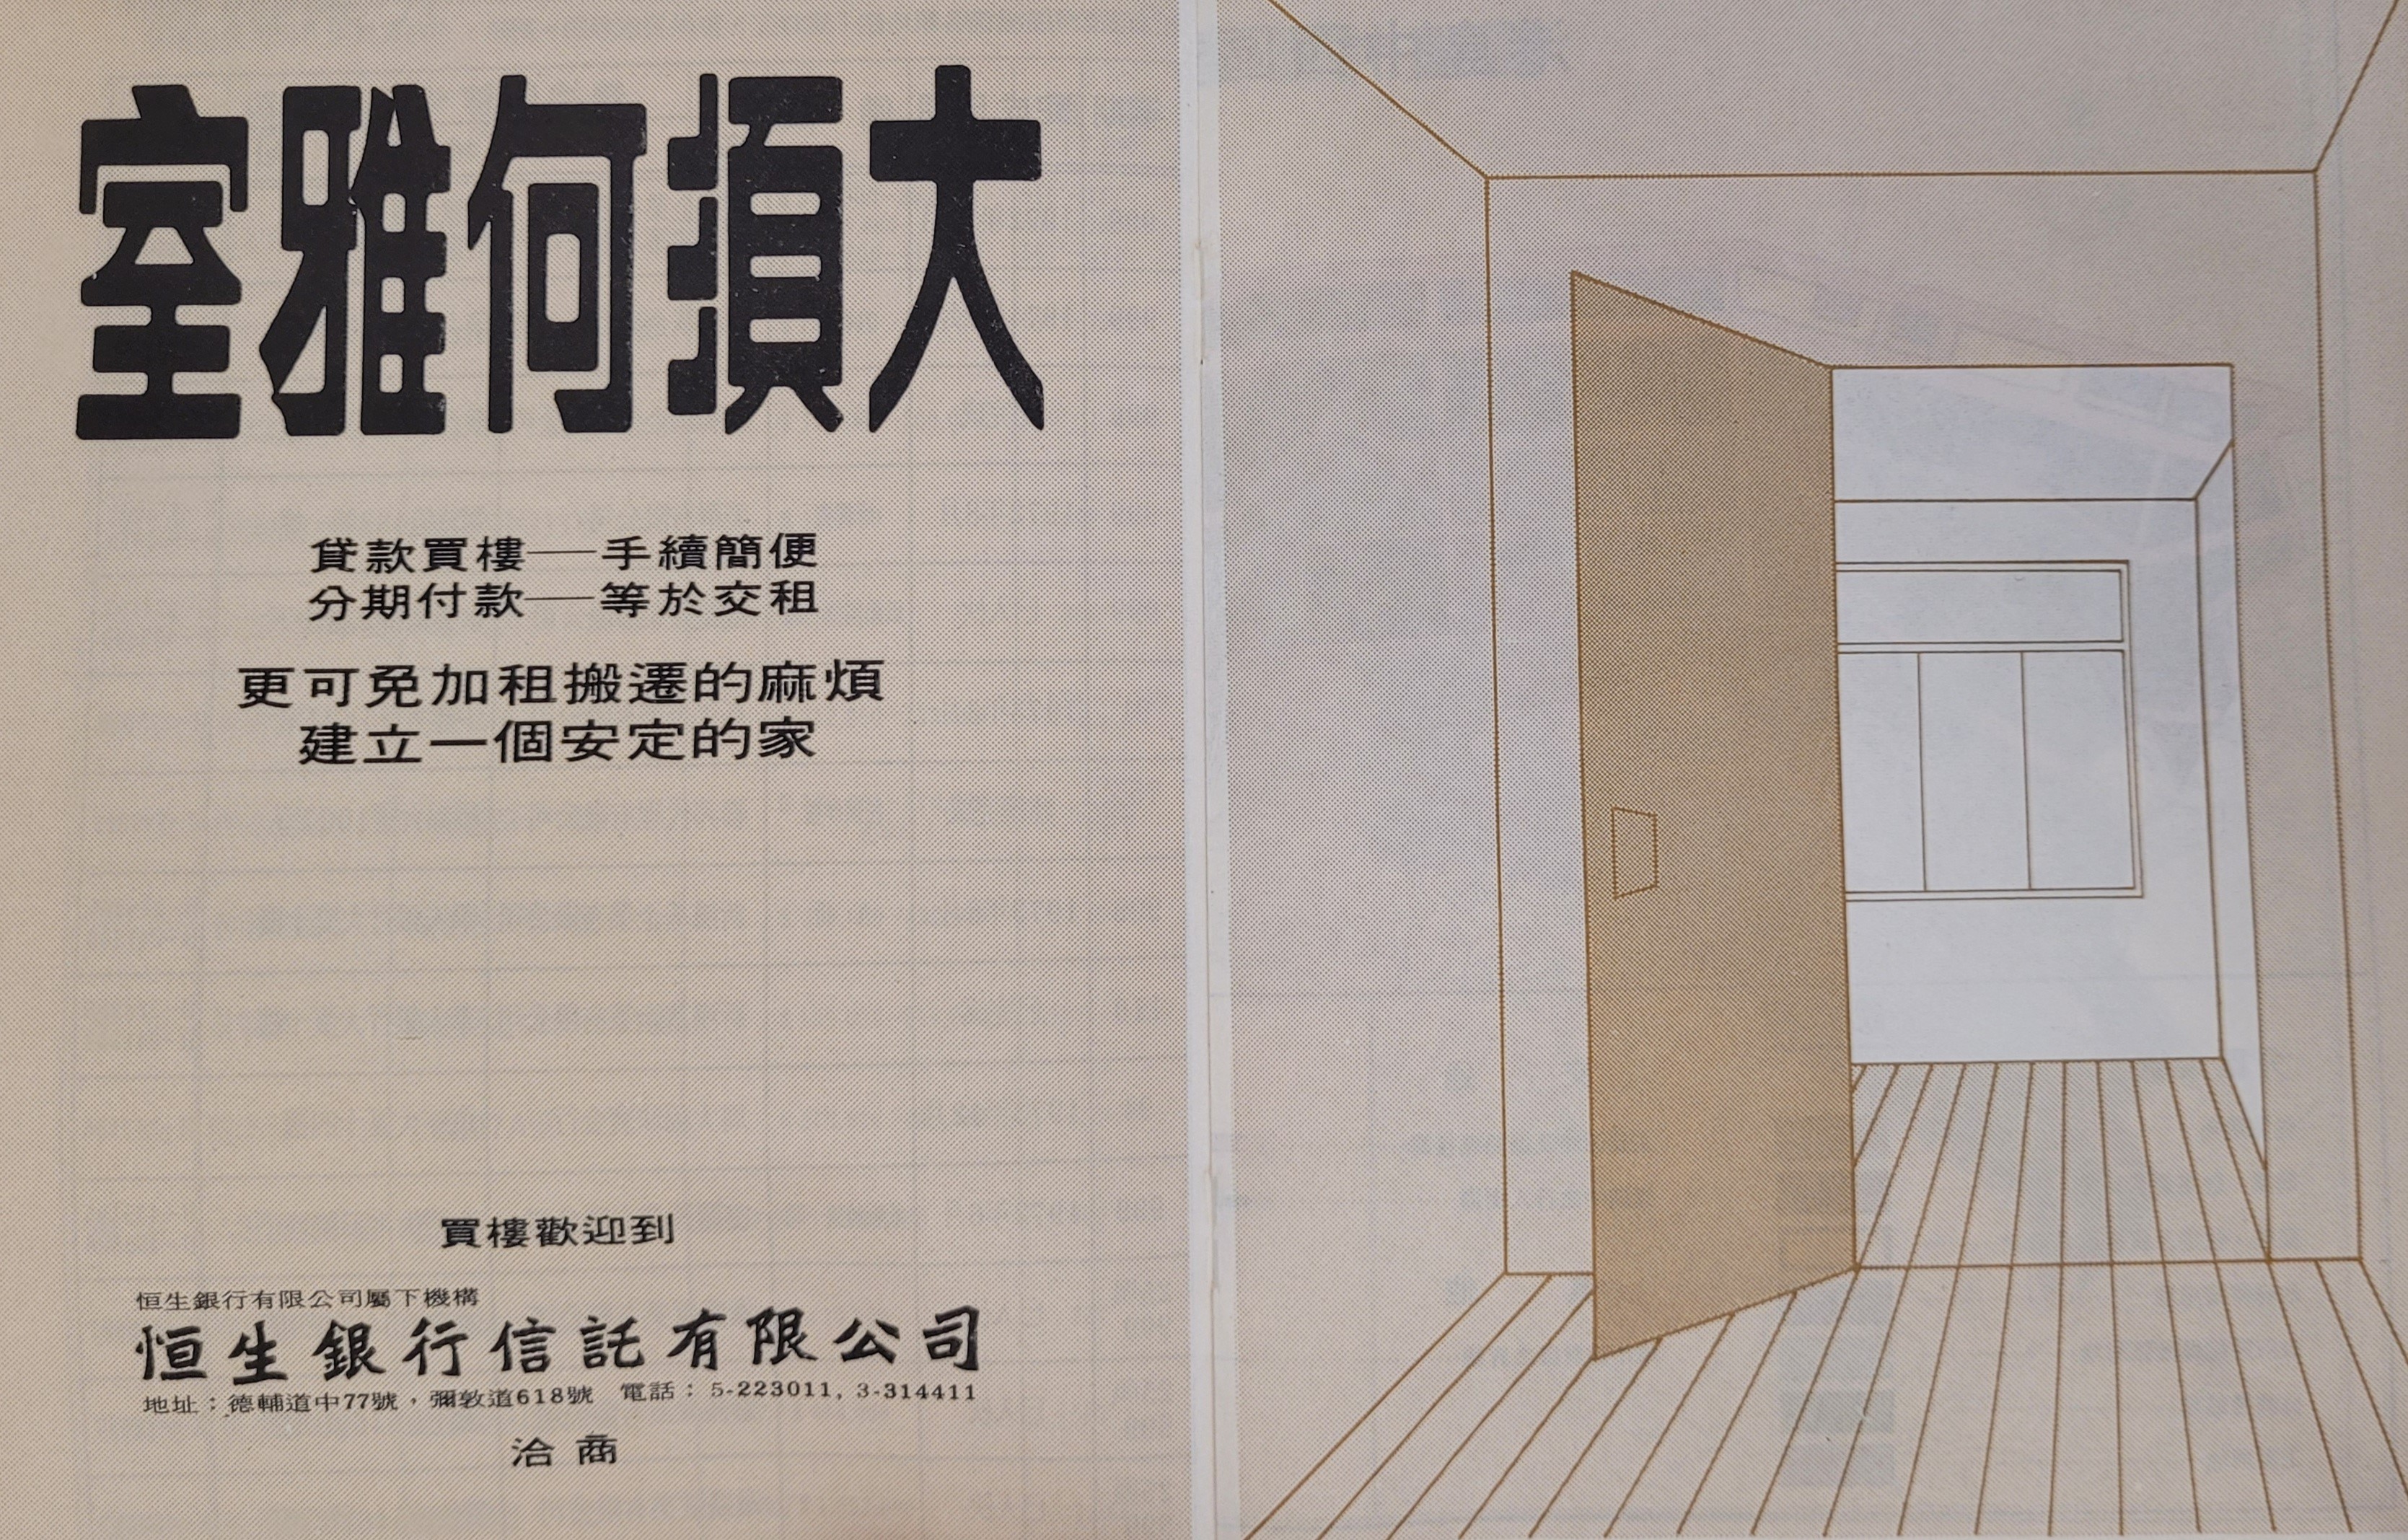 《香港地產簡訊》內頁刊出恒生銀行信託有限公司的樓宇貸款廣告。